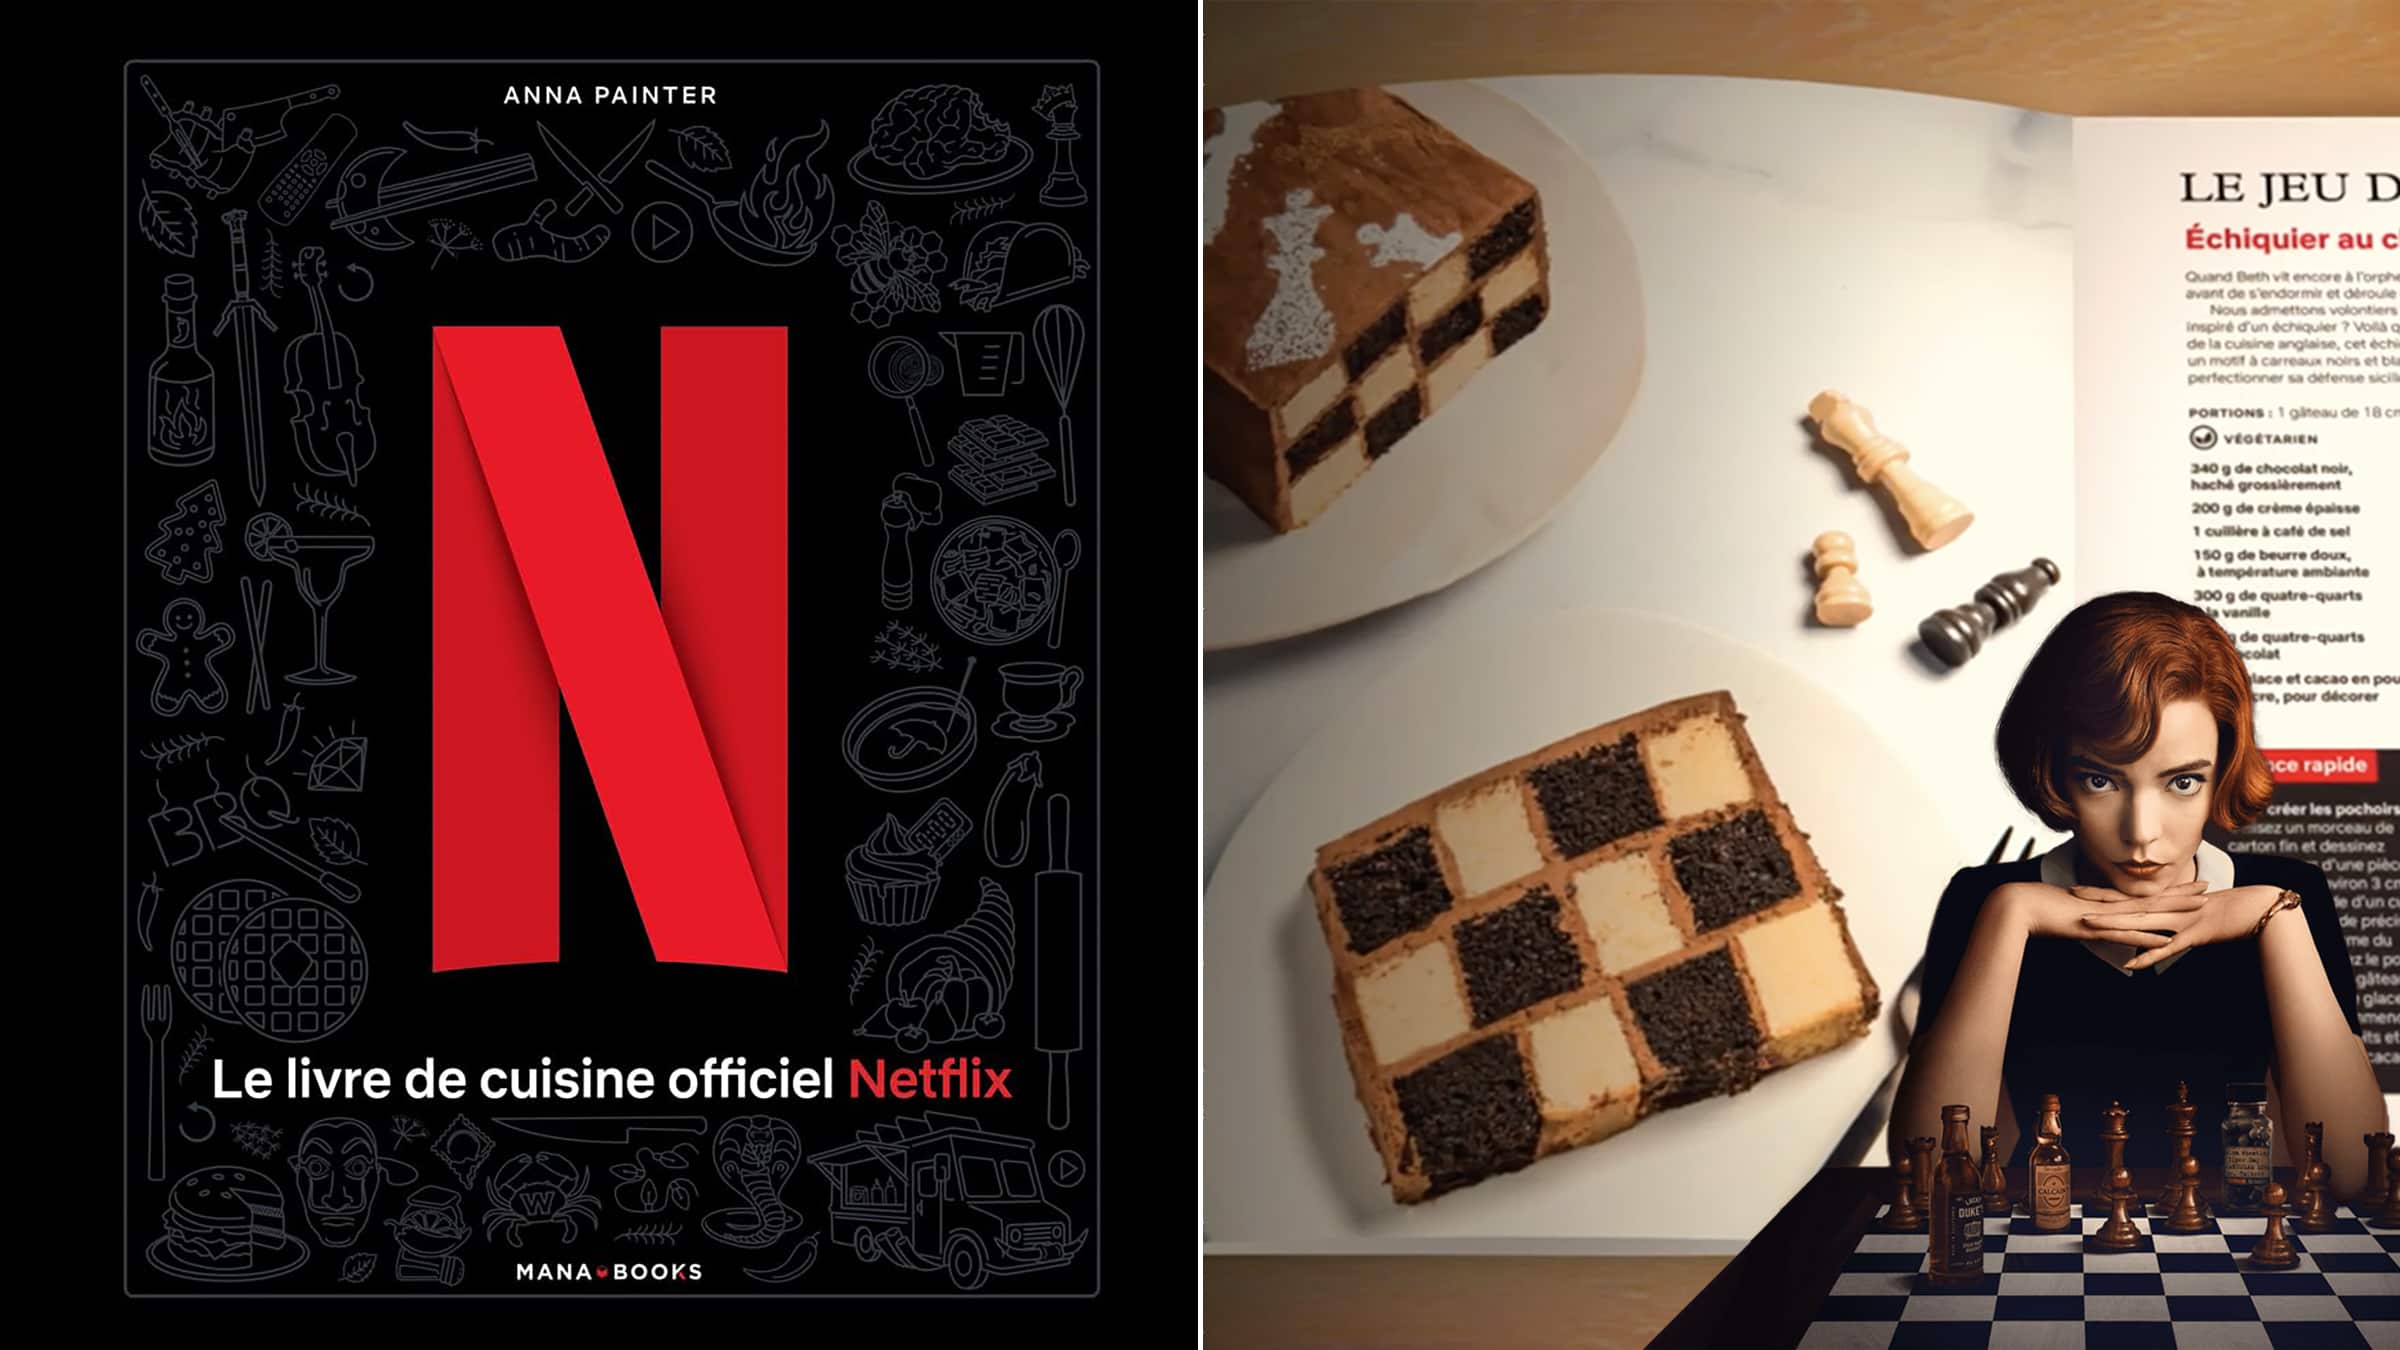 Le livre de cuisine indispensable pour vos prochaines soirées Netflix !